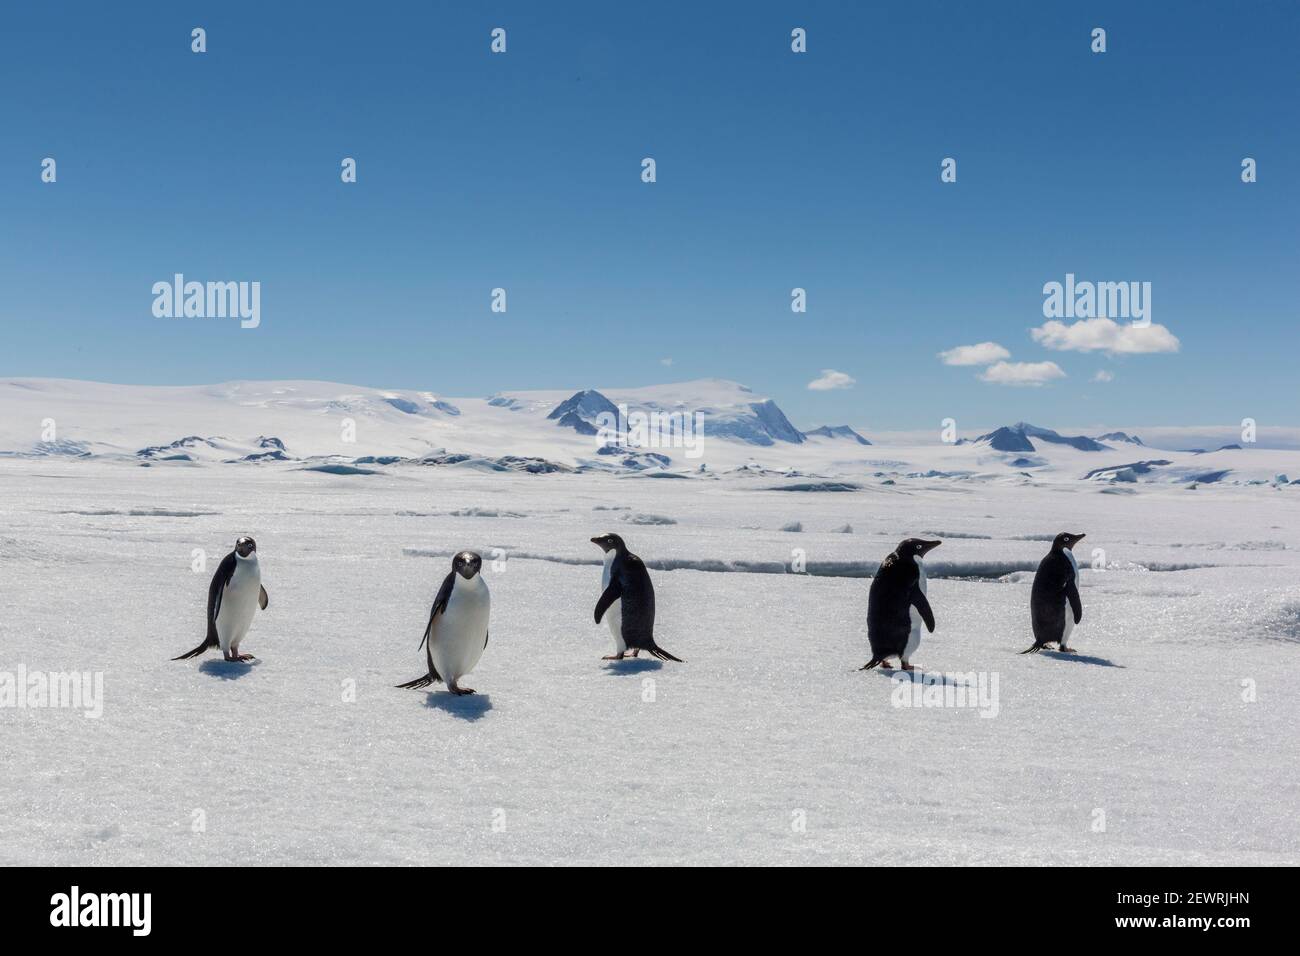 Un grupo de pingüinos Adelie (Pygoscelis adeliae) sobre hielo marino en Bahía de Duse, Mar de Weddell, Antártida, Regiones polares Foto de stock